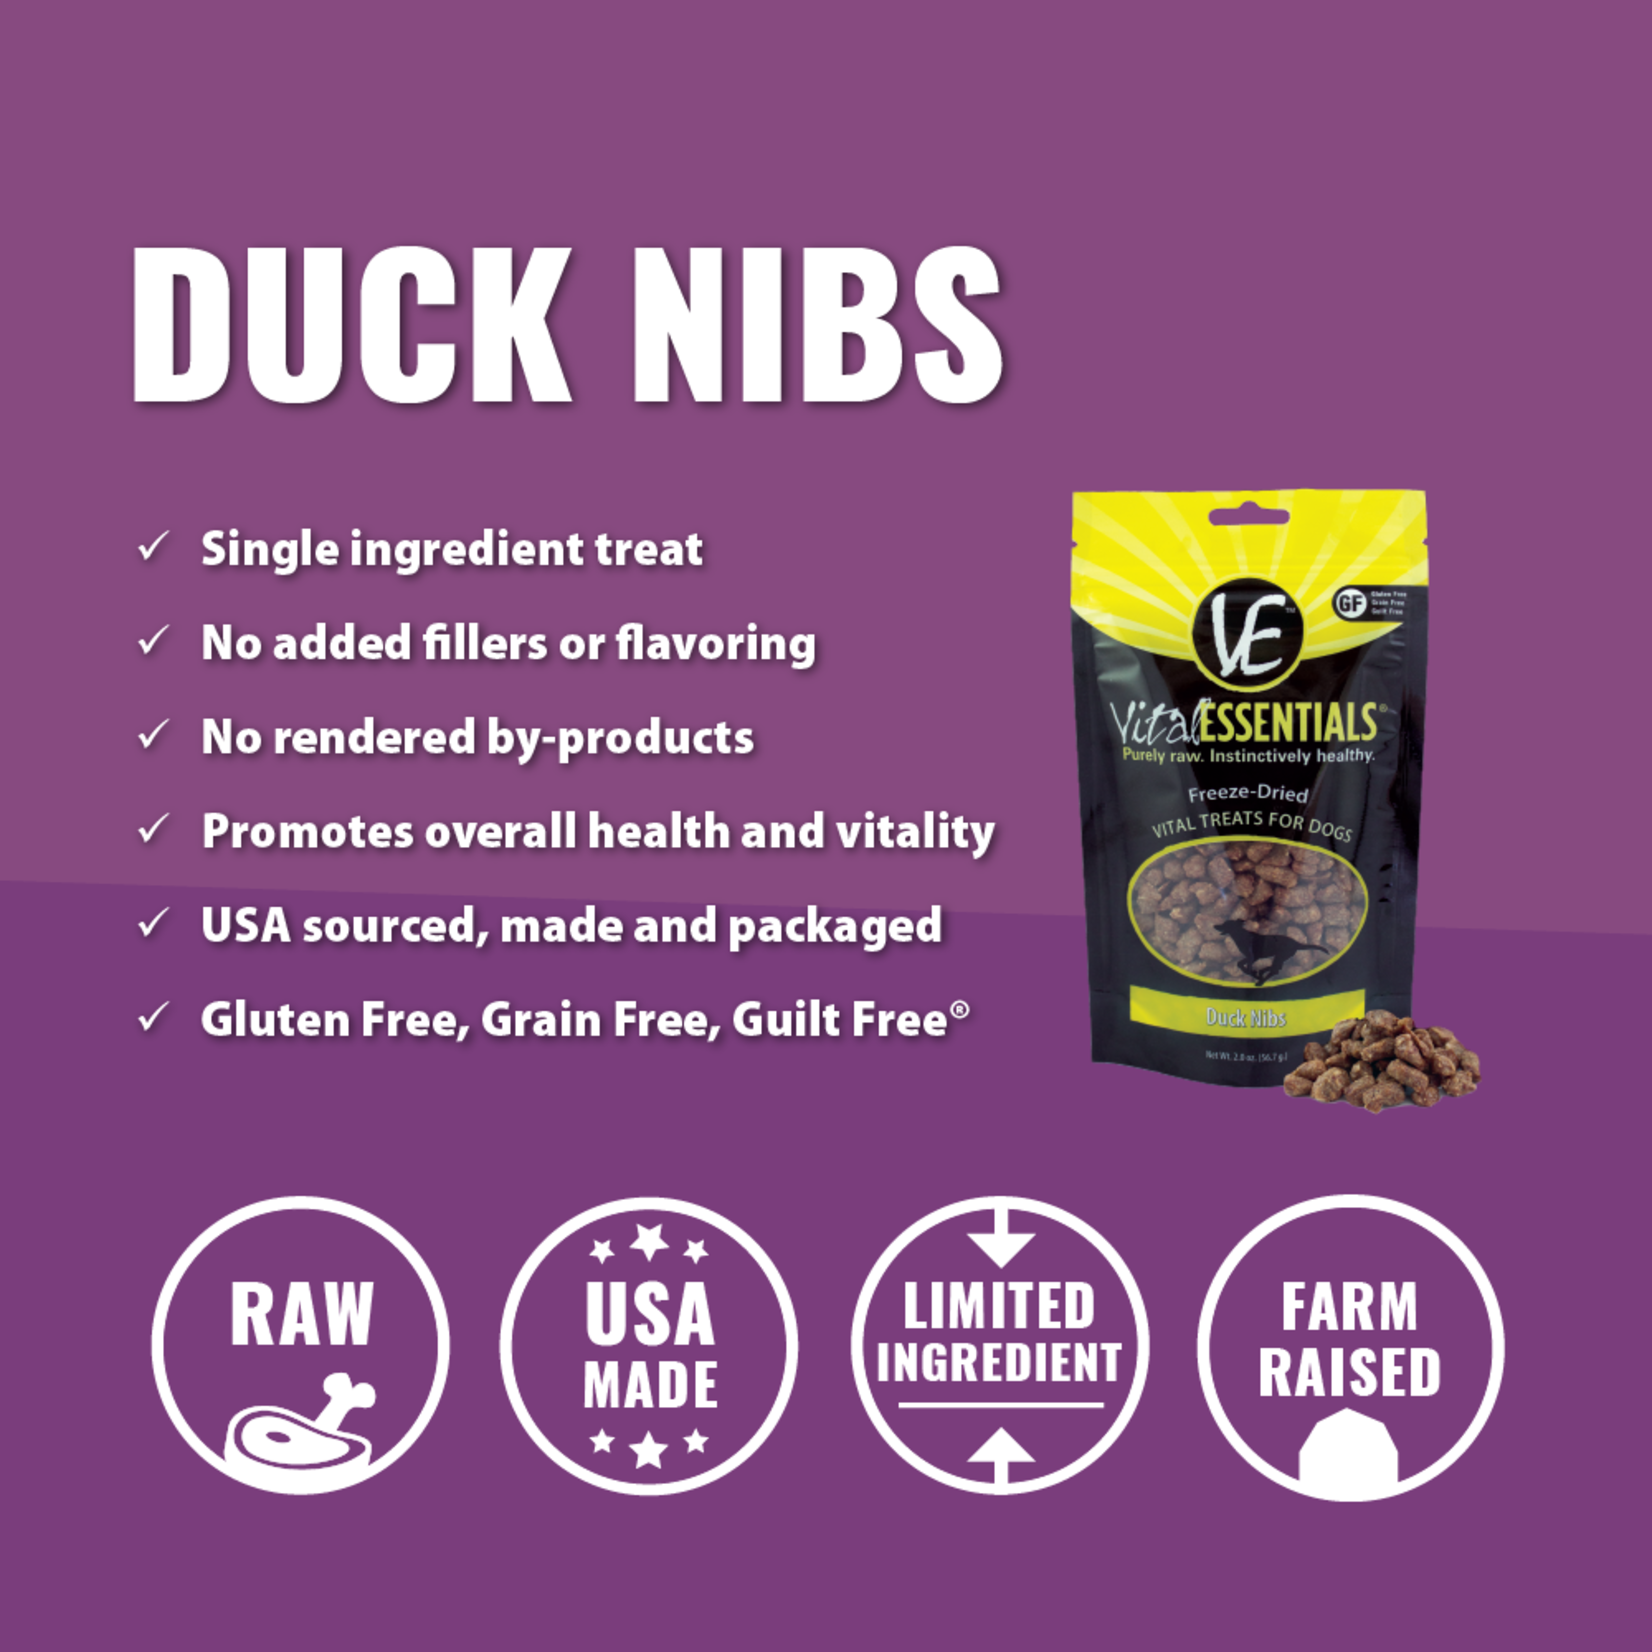 Vital Essentials Duck Nibs Freeze-Dried Grain Free Treats